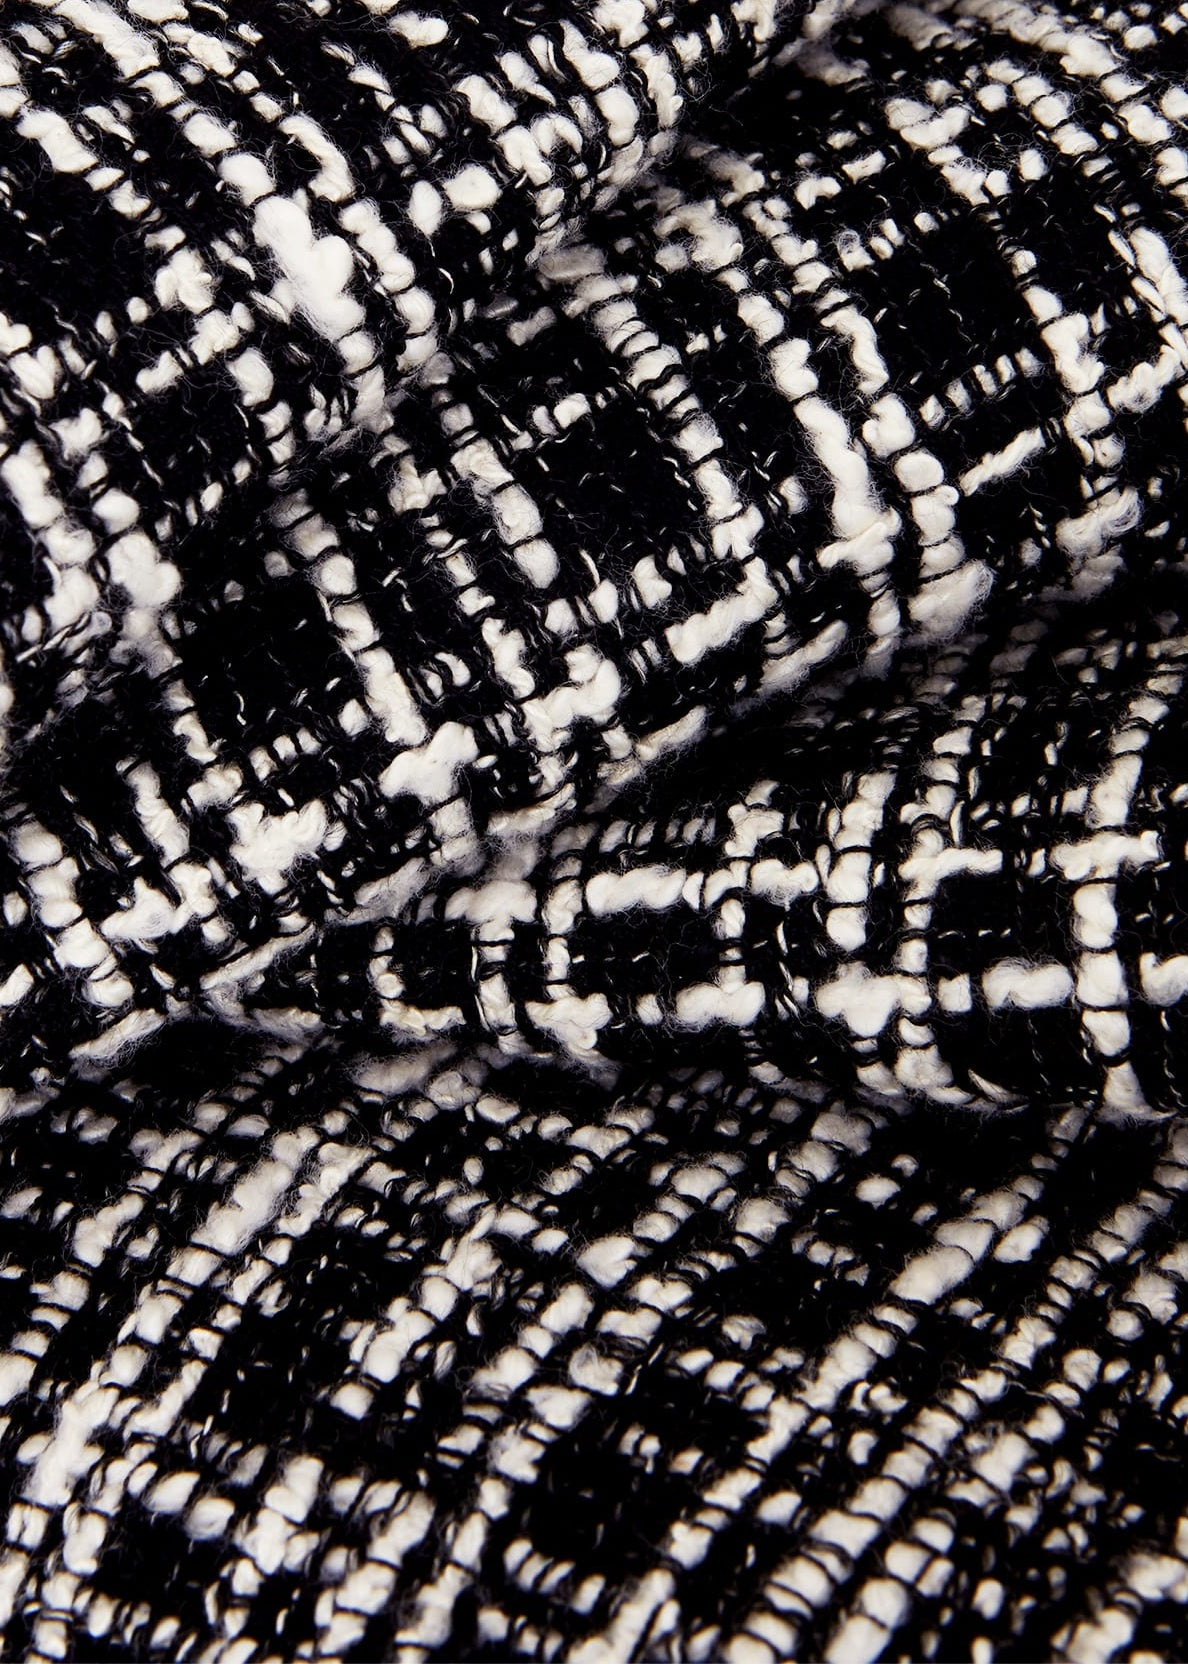 Adelaide Dress 0223/5955/9083l00 Black-Ivory